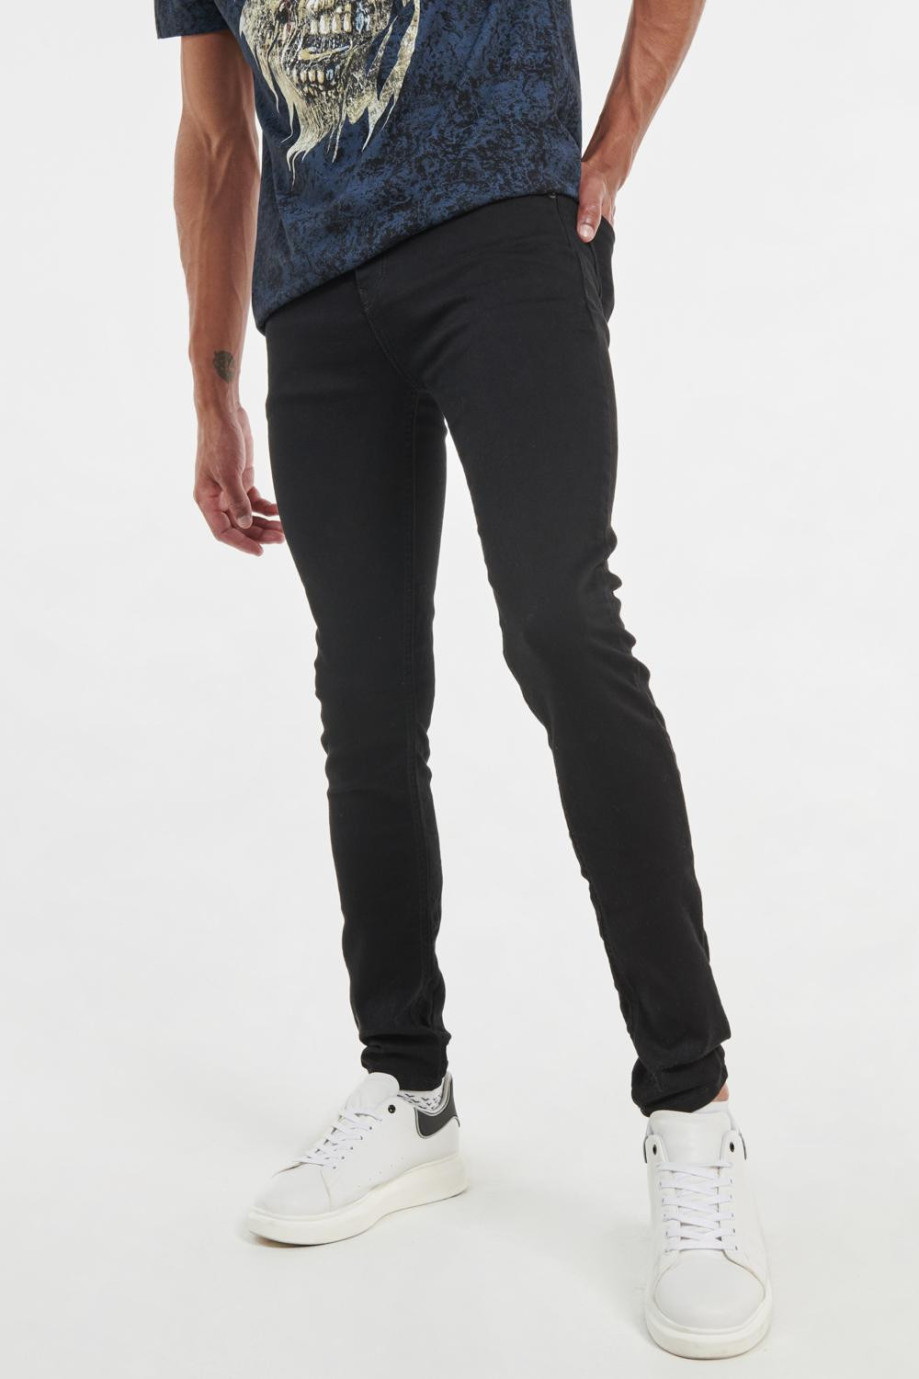 Jean negro súper skinny con tiro bajo, ajuste ceñido y botón metálico